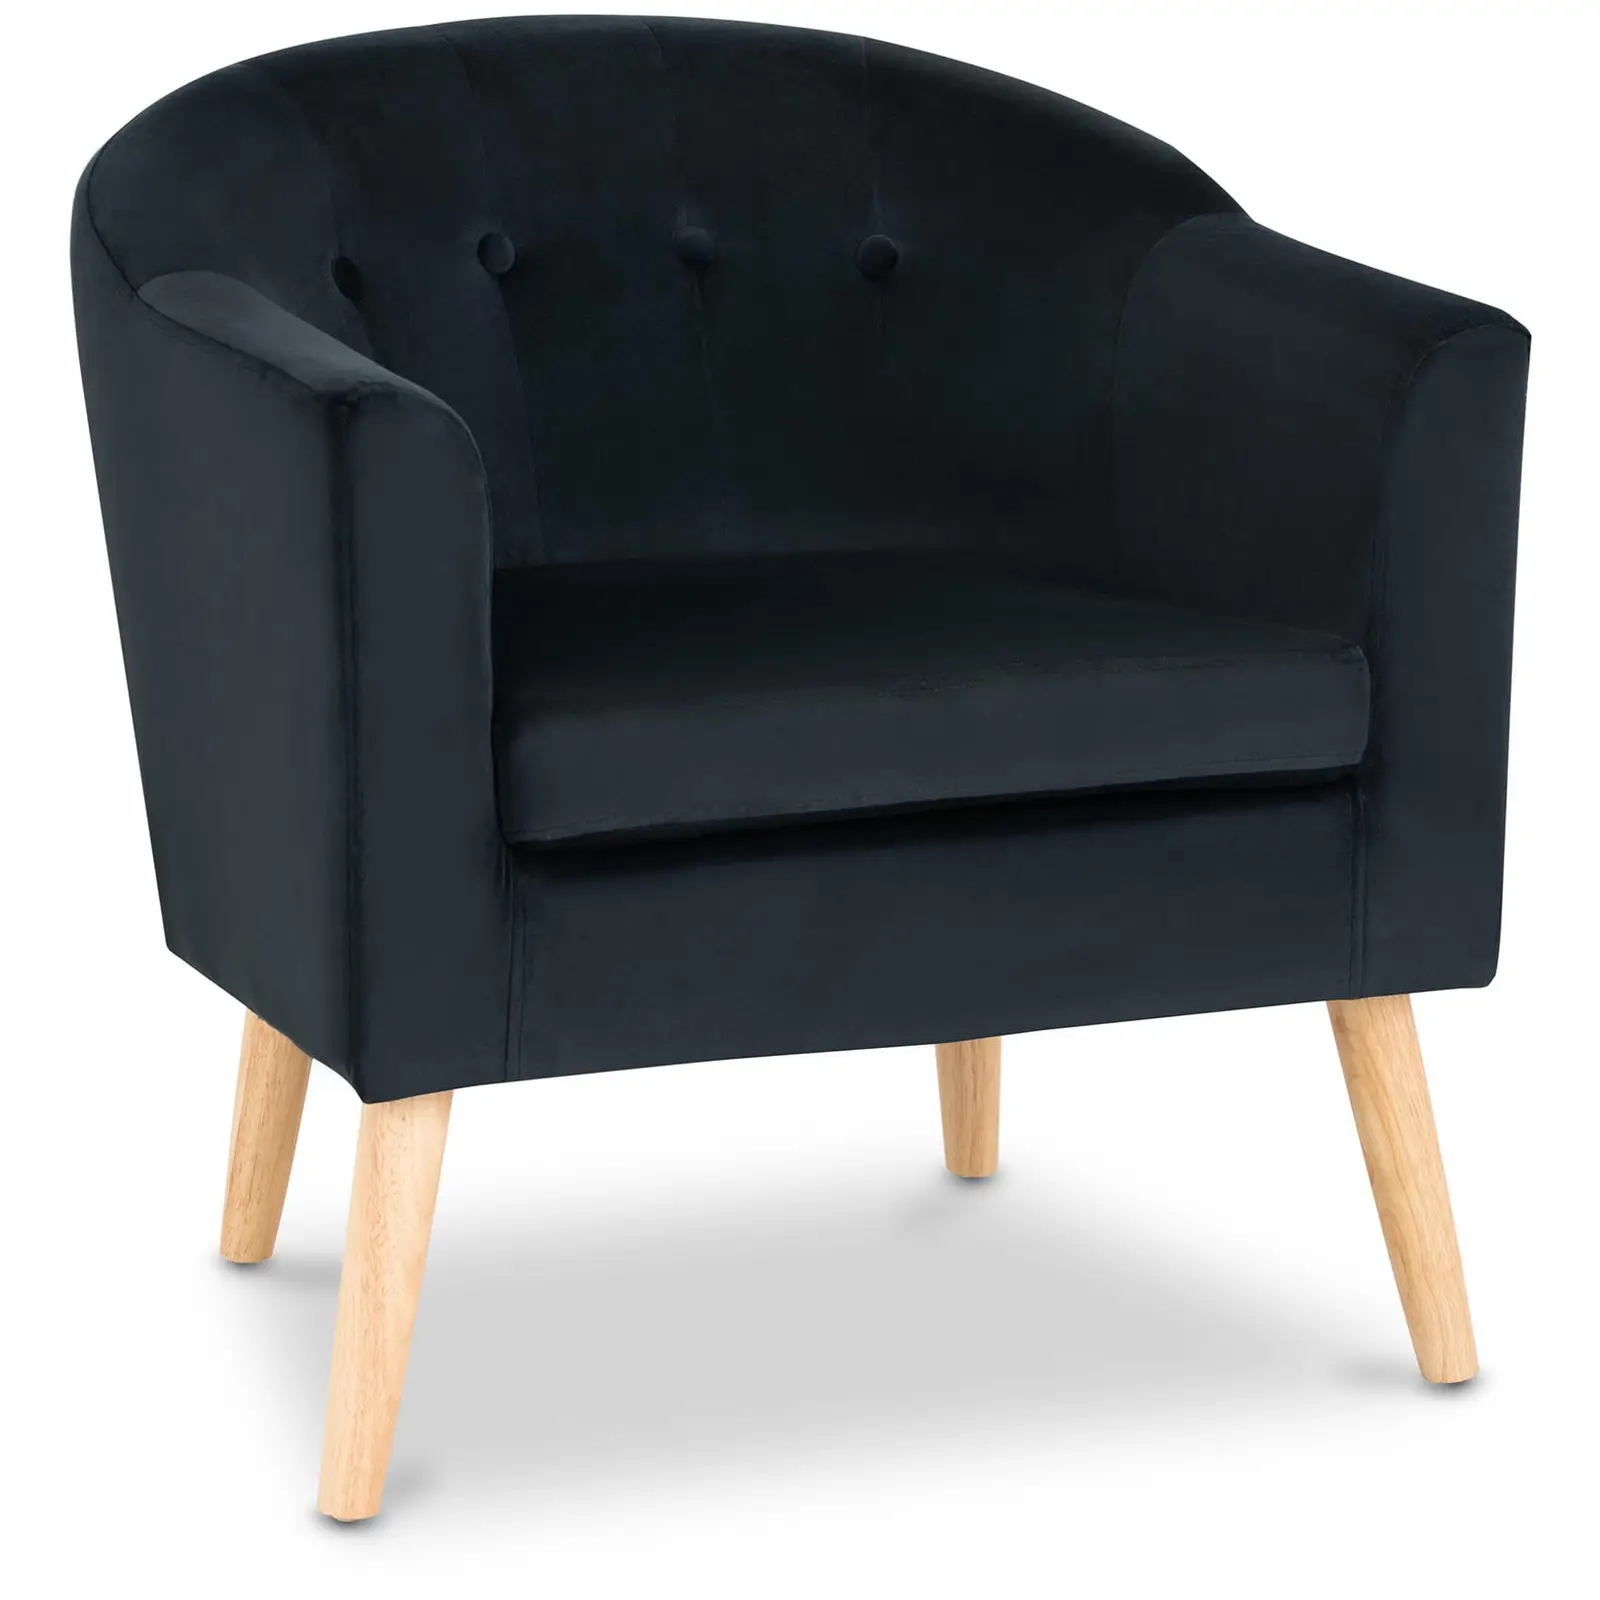 Occasion Chaise en tissu - 180 kg max. - Surface d'assise de 49 x 53 cm - Coloris noir